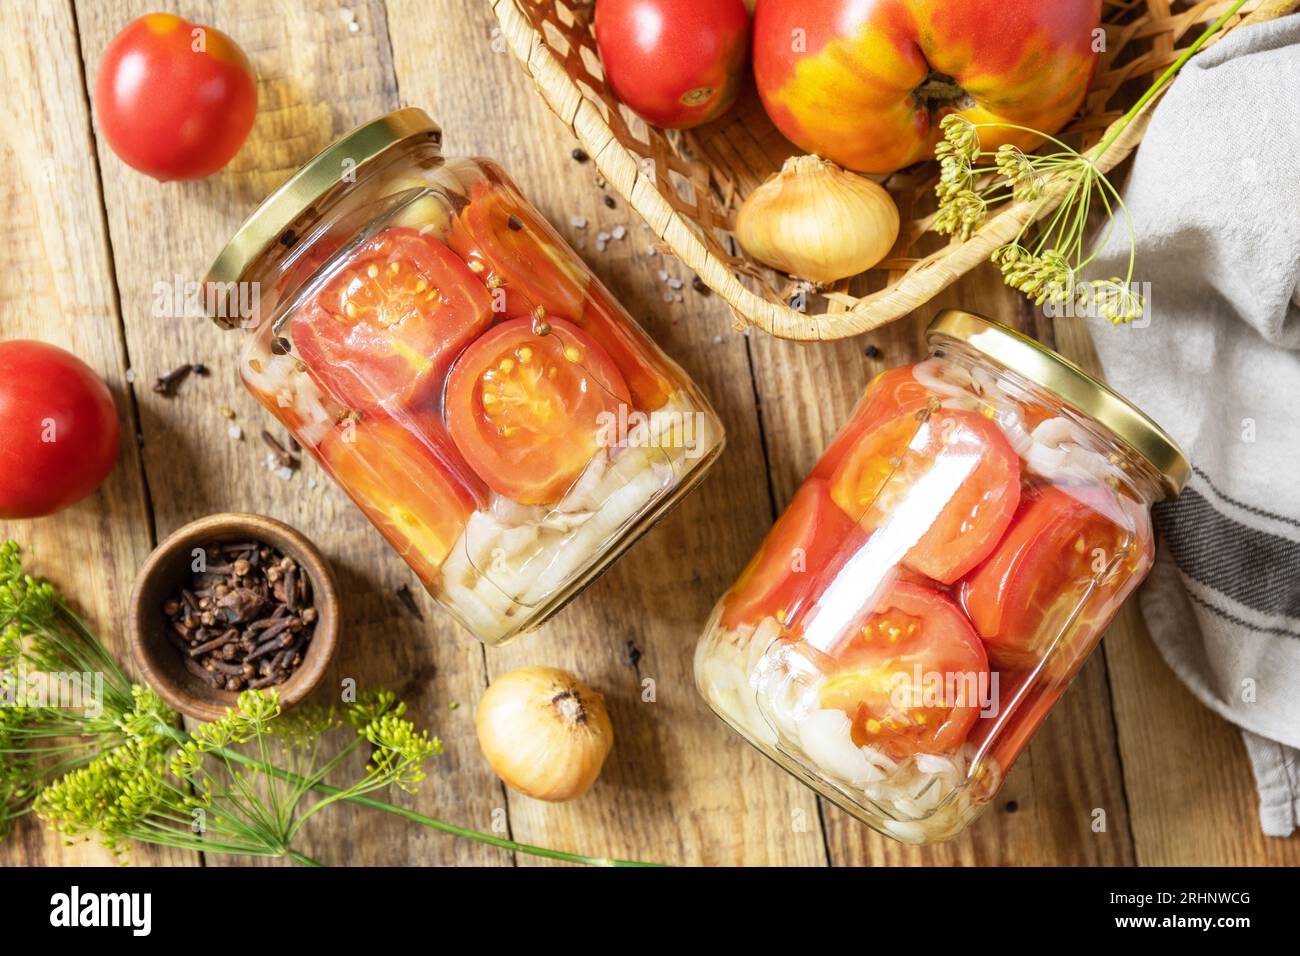 Gesundes, hausgemachtes fermentiertes Essen. Gesalzene eingelegte Tomaten und Zwiebeln, konserviert in Glasbehältern. Hauswirtschaft, Herbsternteerhaltung. Ansicht f Stockfoto